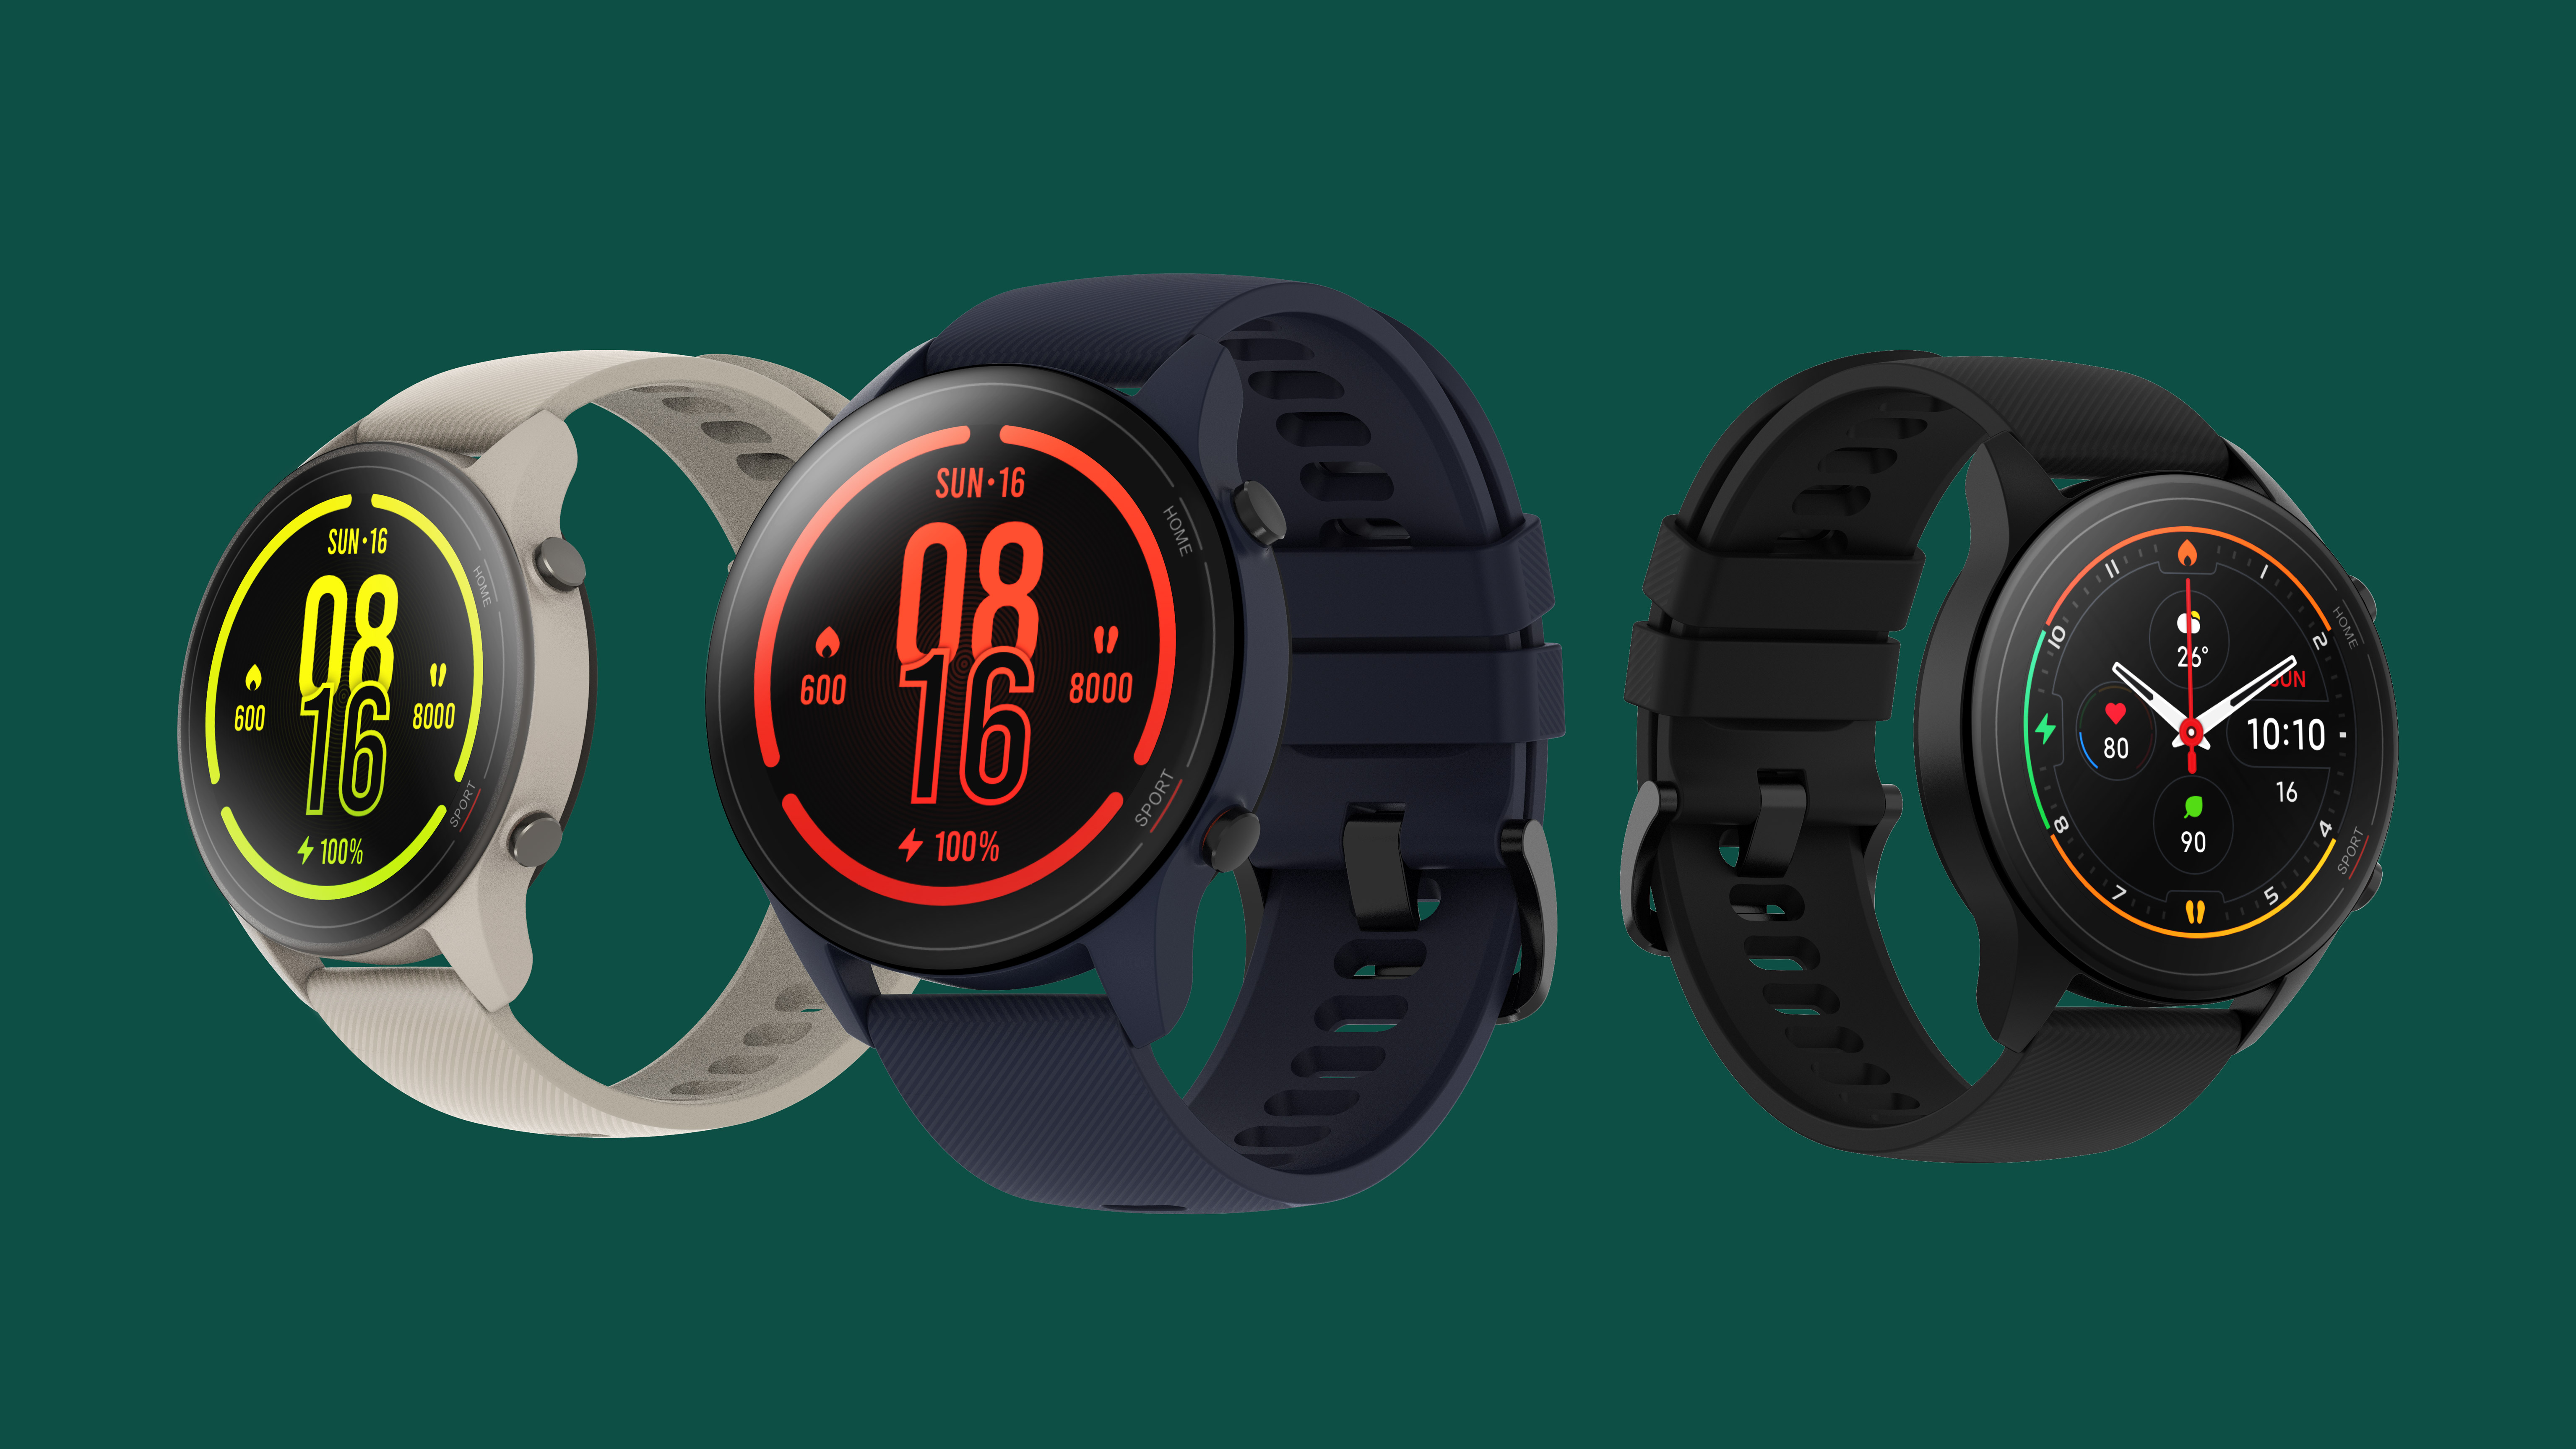 Xiaomi умные часы 2020. Xiaomi mi watch старт продаж. Спортивные часы Xiaomi mi Bad. Виджеты часов для Xiaomi. Часы xiaomi зависли